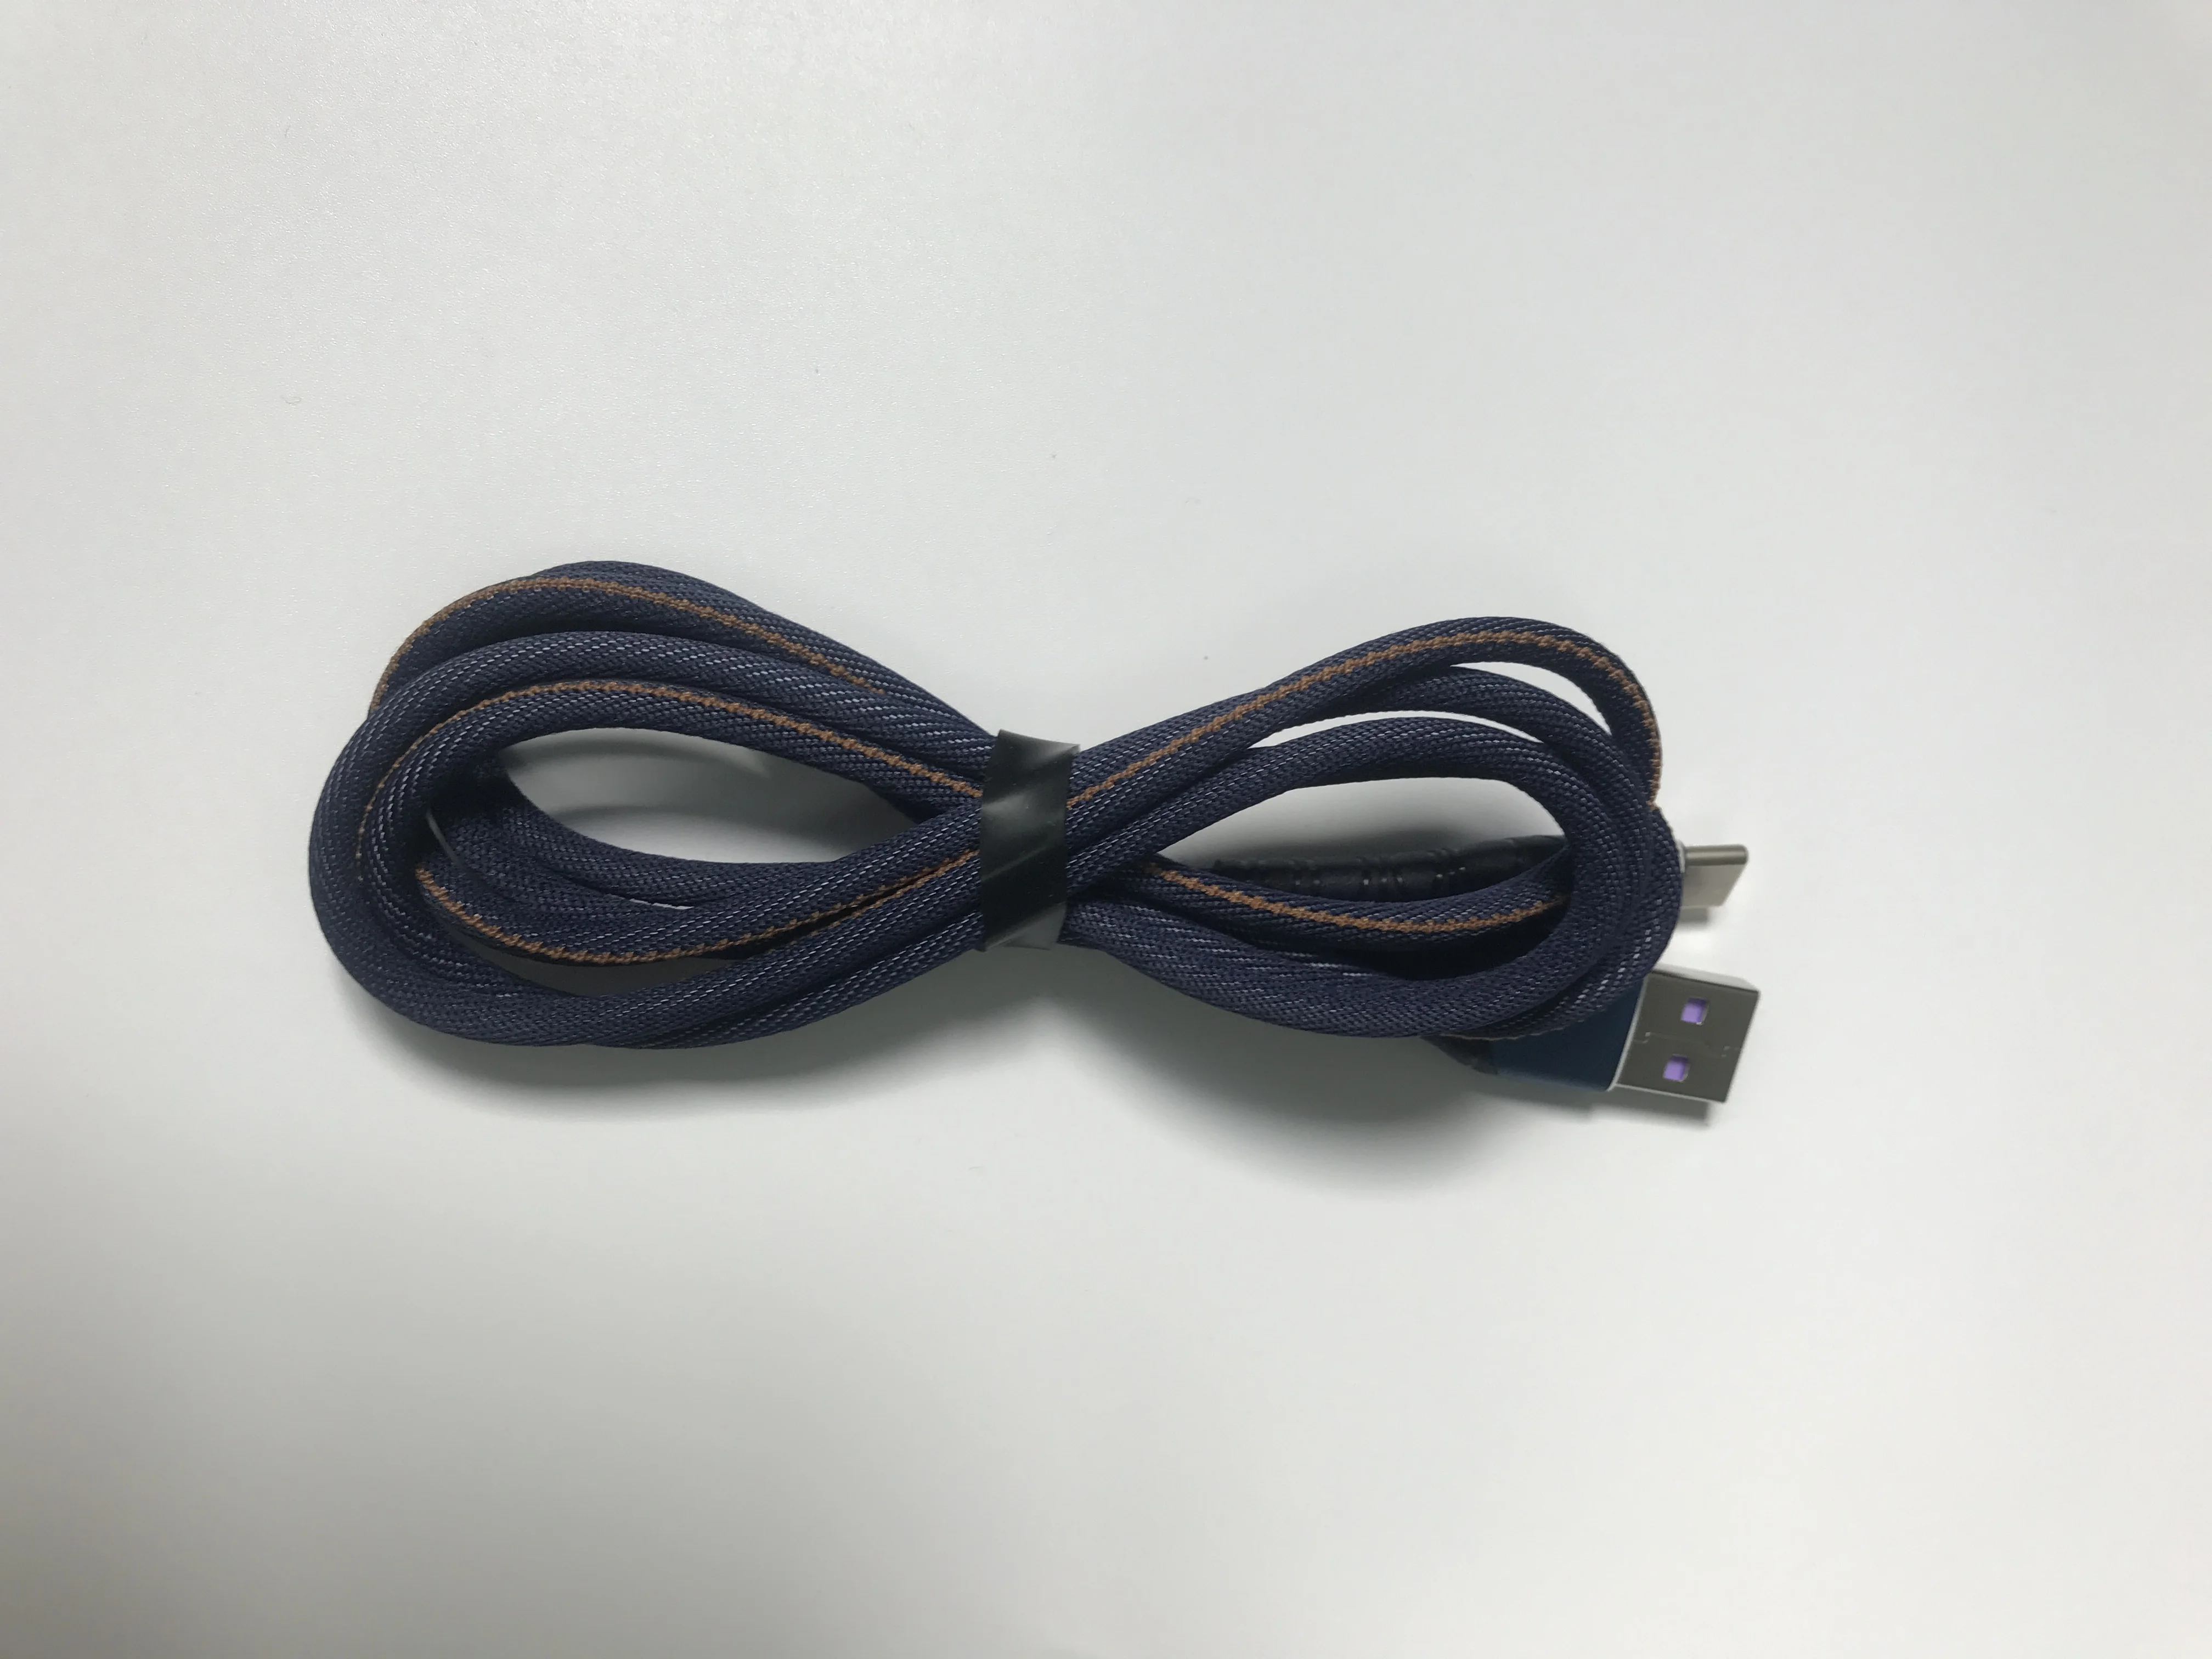 5А usb type C кабель для быстрой зарядки usb c кабель для передачи данных type-c зарядное устройство для телефона samsung S10 Plus Note 9 8 huawei P30 Pro pocophone F1